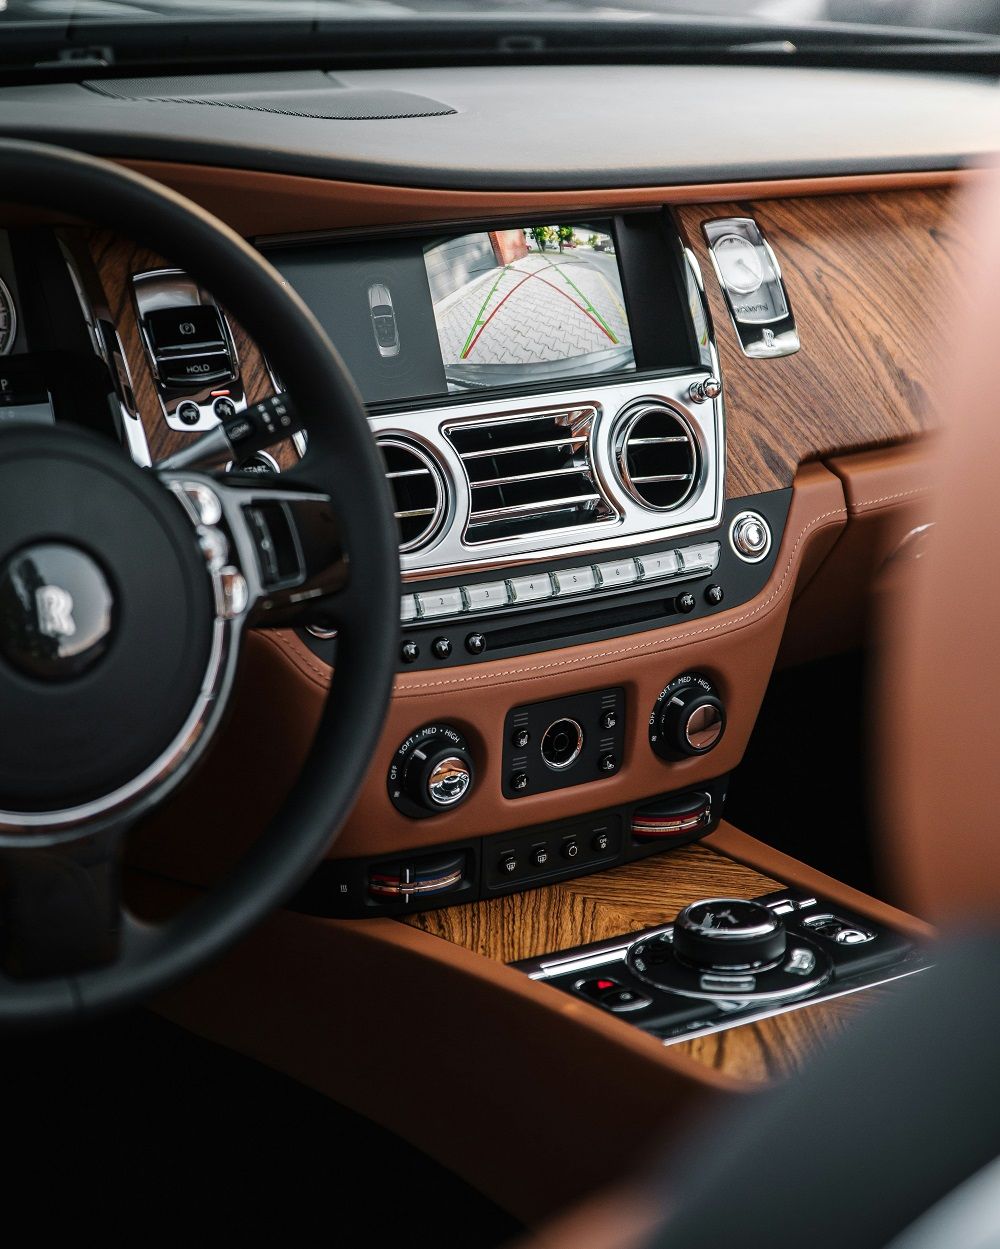 Rolls Royce dashboard